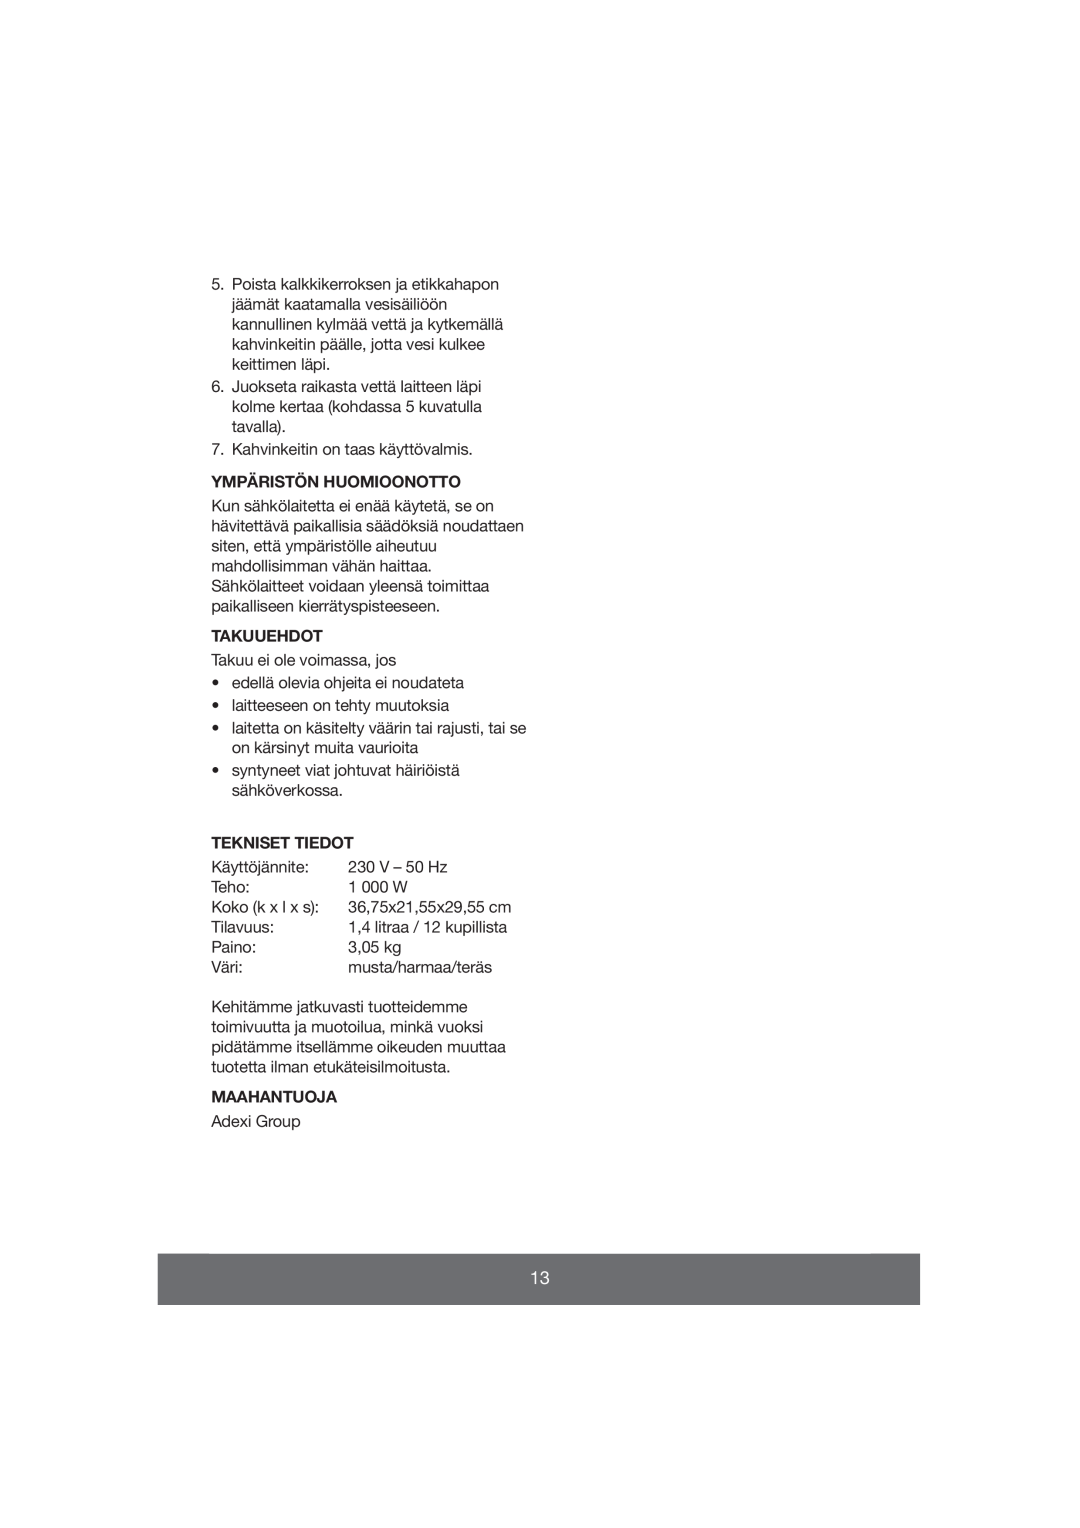 Butler 645-061 manual Ympäristön Huomioonotto, Takuuehdot, Tekniset Tiedot, Maahantuoja 